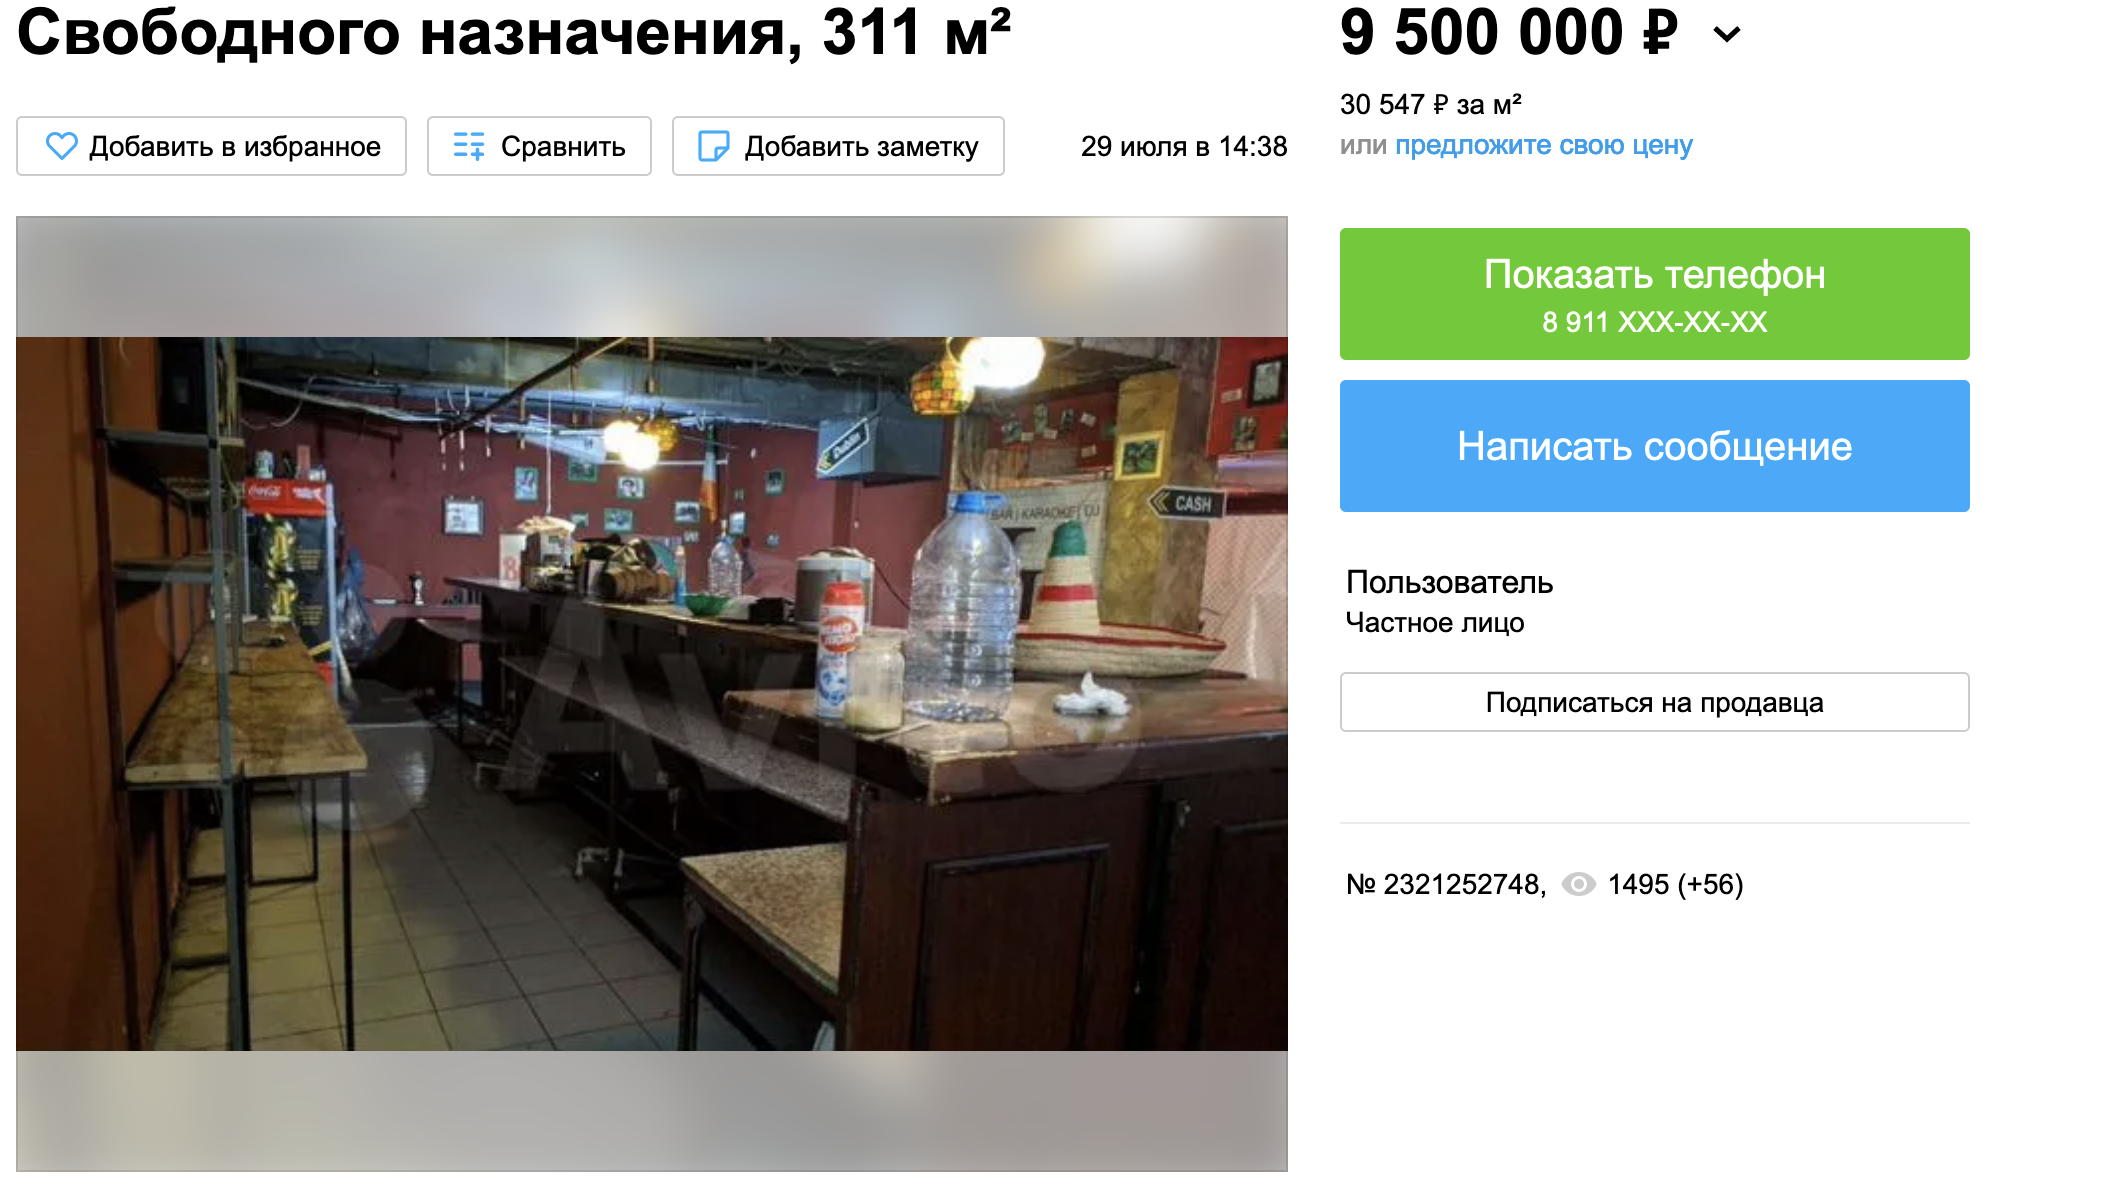 Ульяновский паб «Джон Поттерс» выставили на продажу за 9,5 миллиона рублей